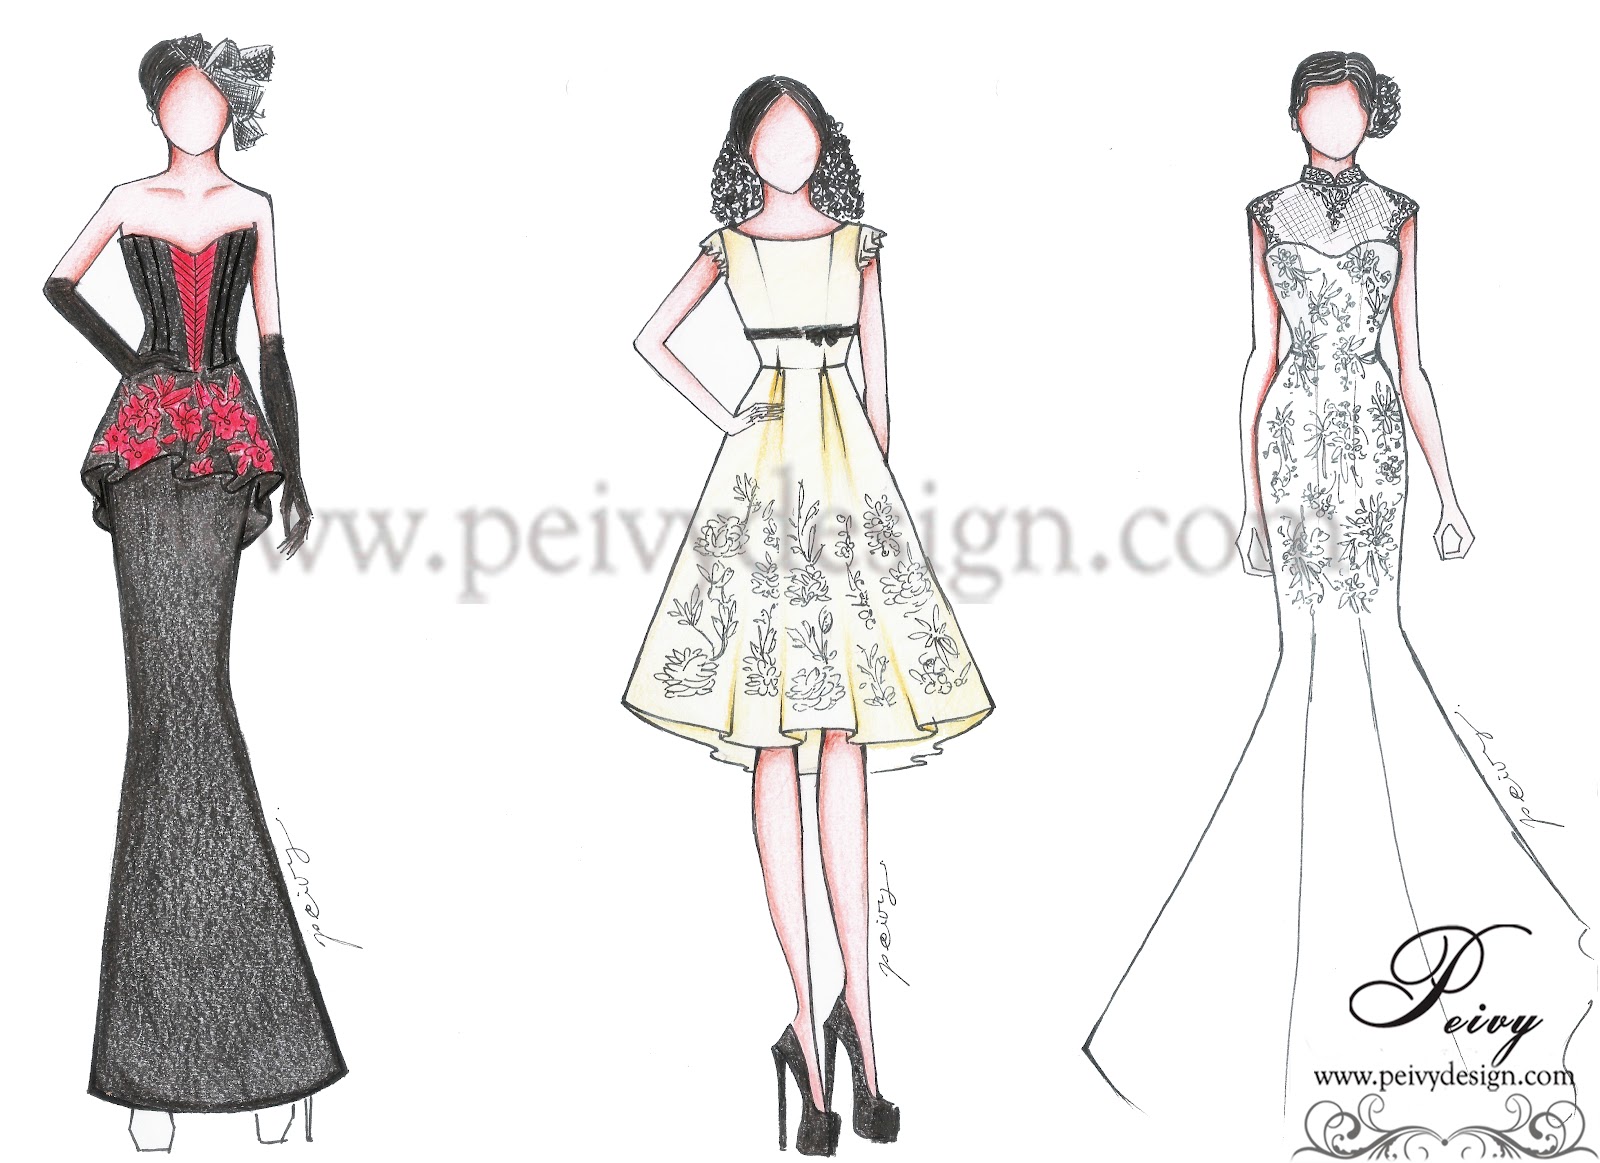 Kumpulan Soal Pelajaran 8 Gambar Desain Sketsa Baju Dress Pendek